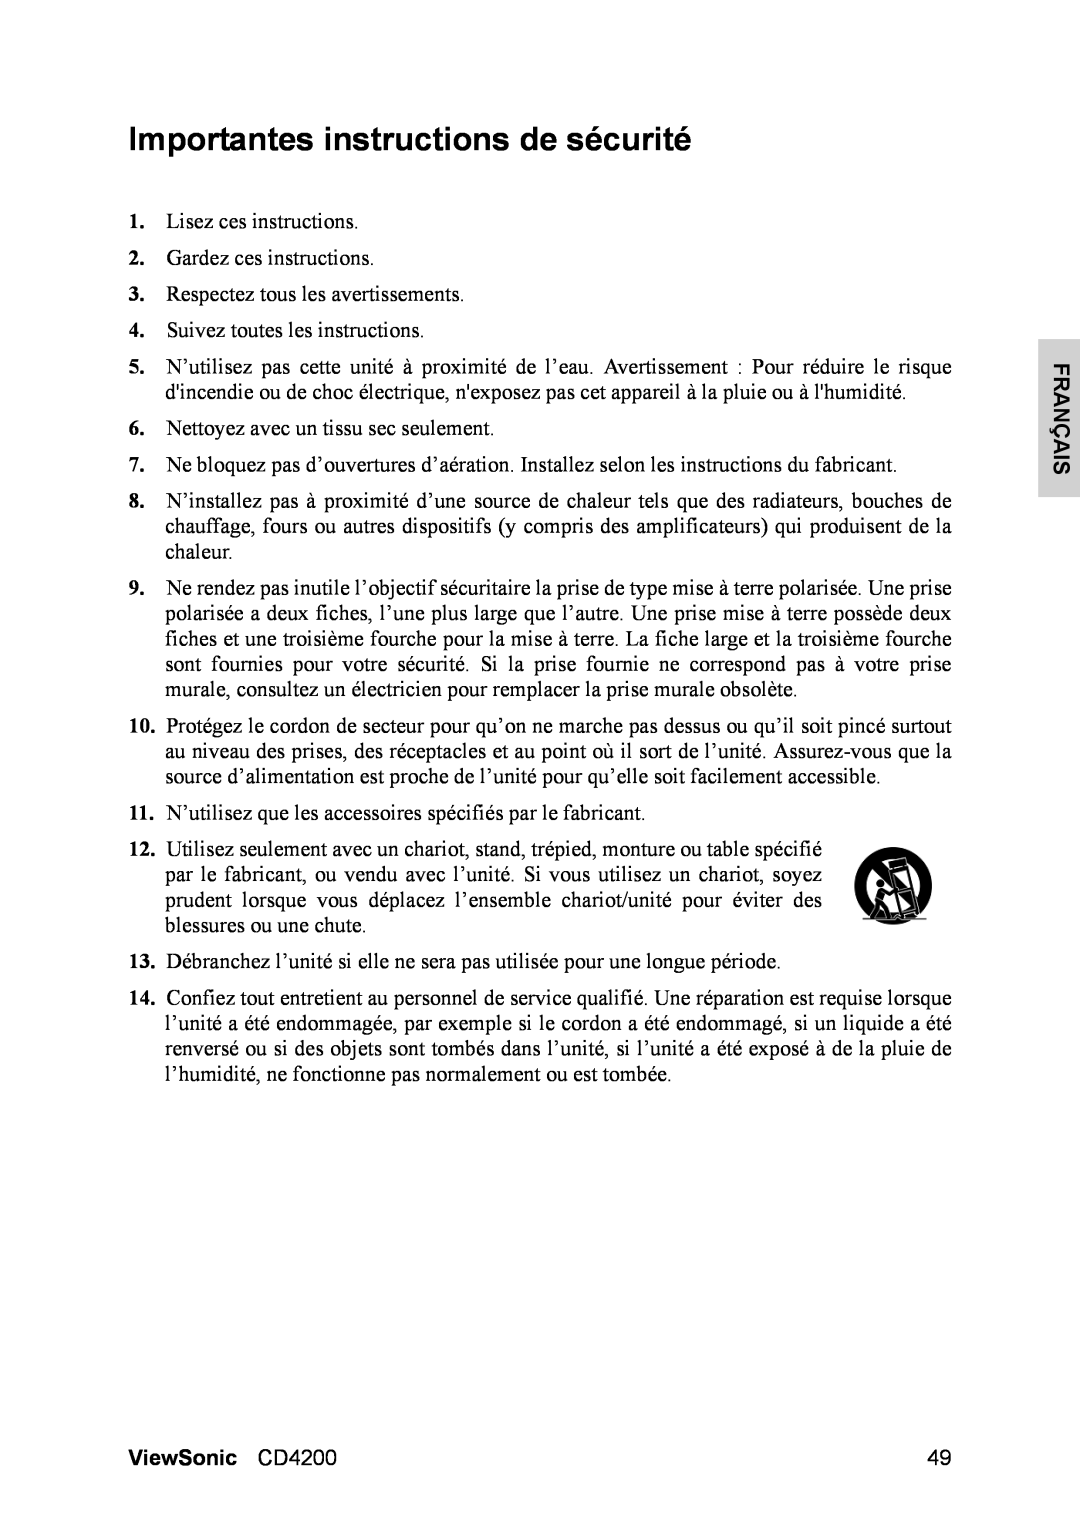 ViewSonic manual Importantes instructions de sécurité, Français, ViewSonic CD4200 